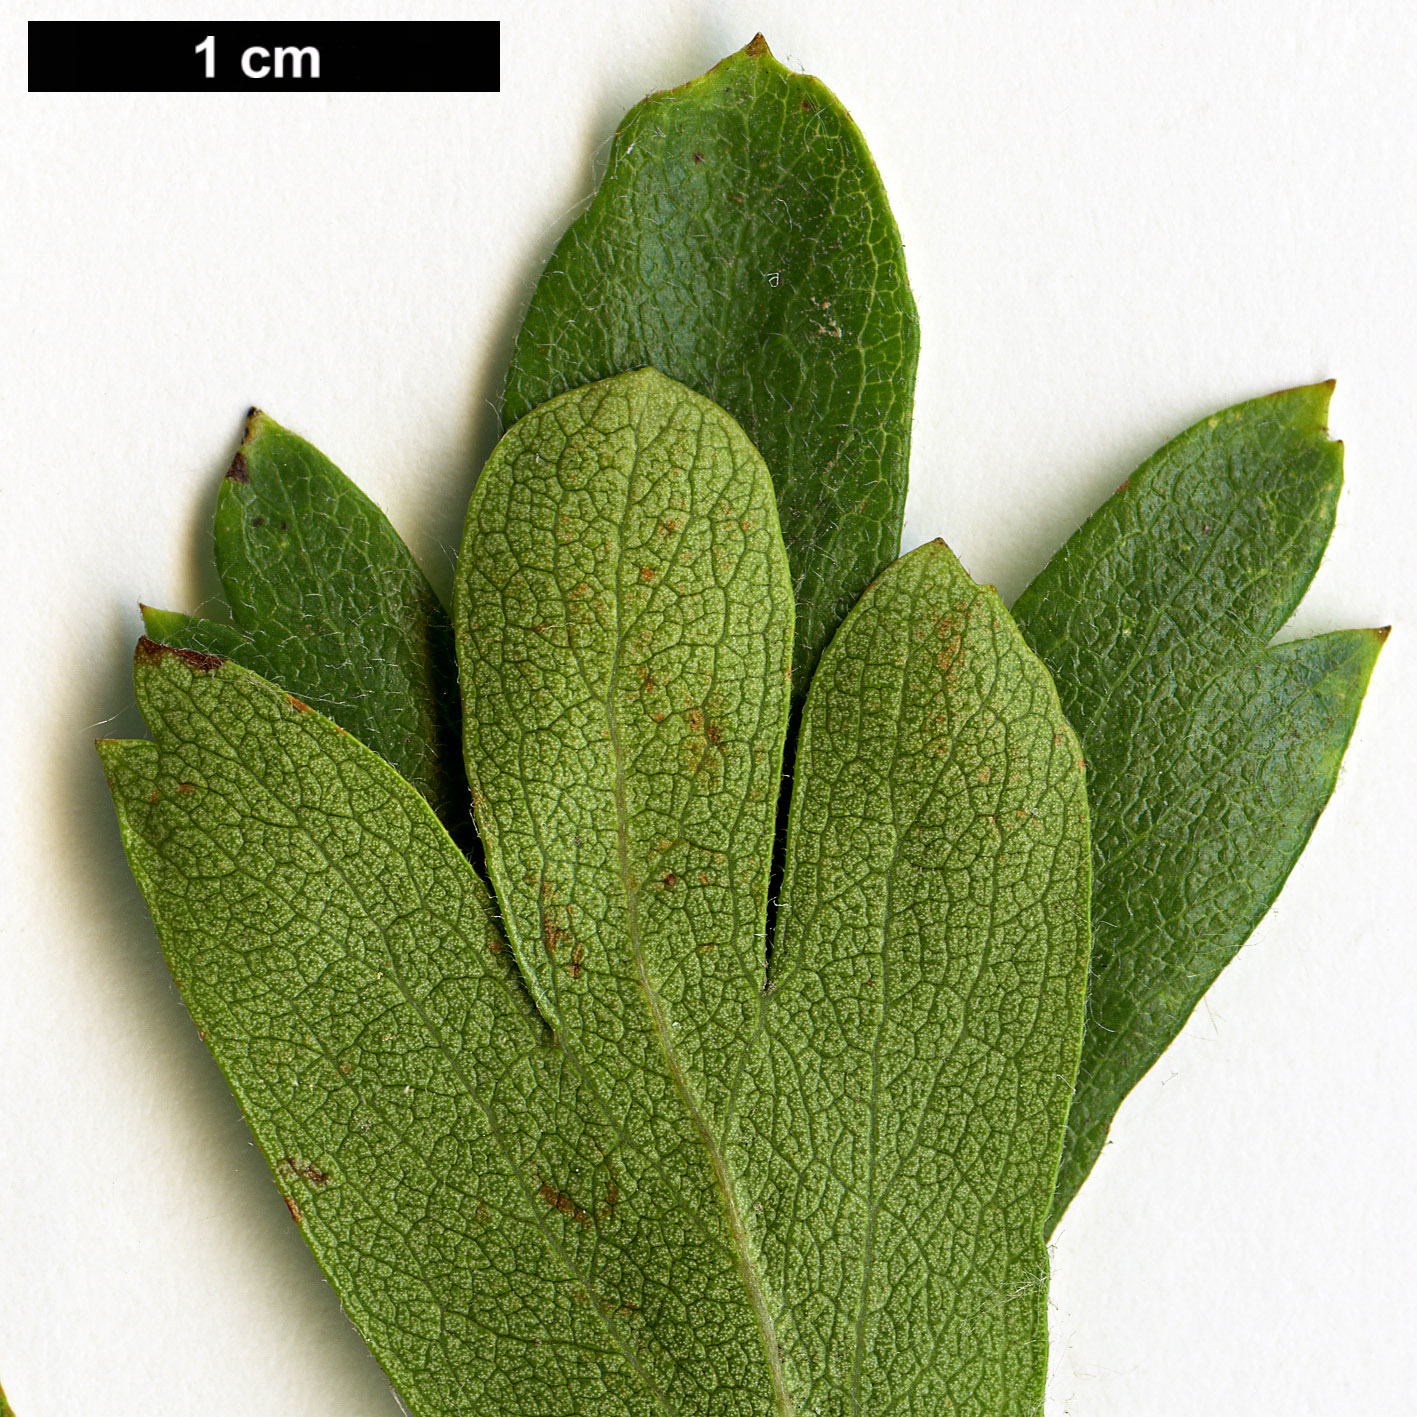 High resolution image: Family: Rosaceae - Genus: Crataegus - Taxon: azarolus